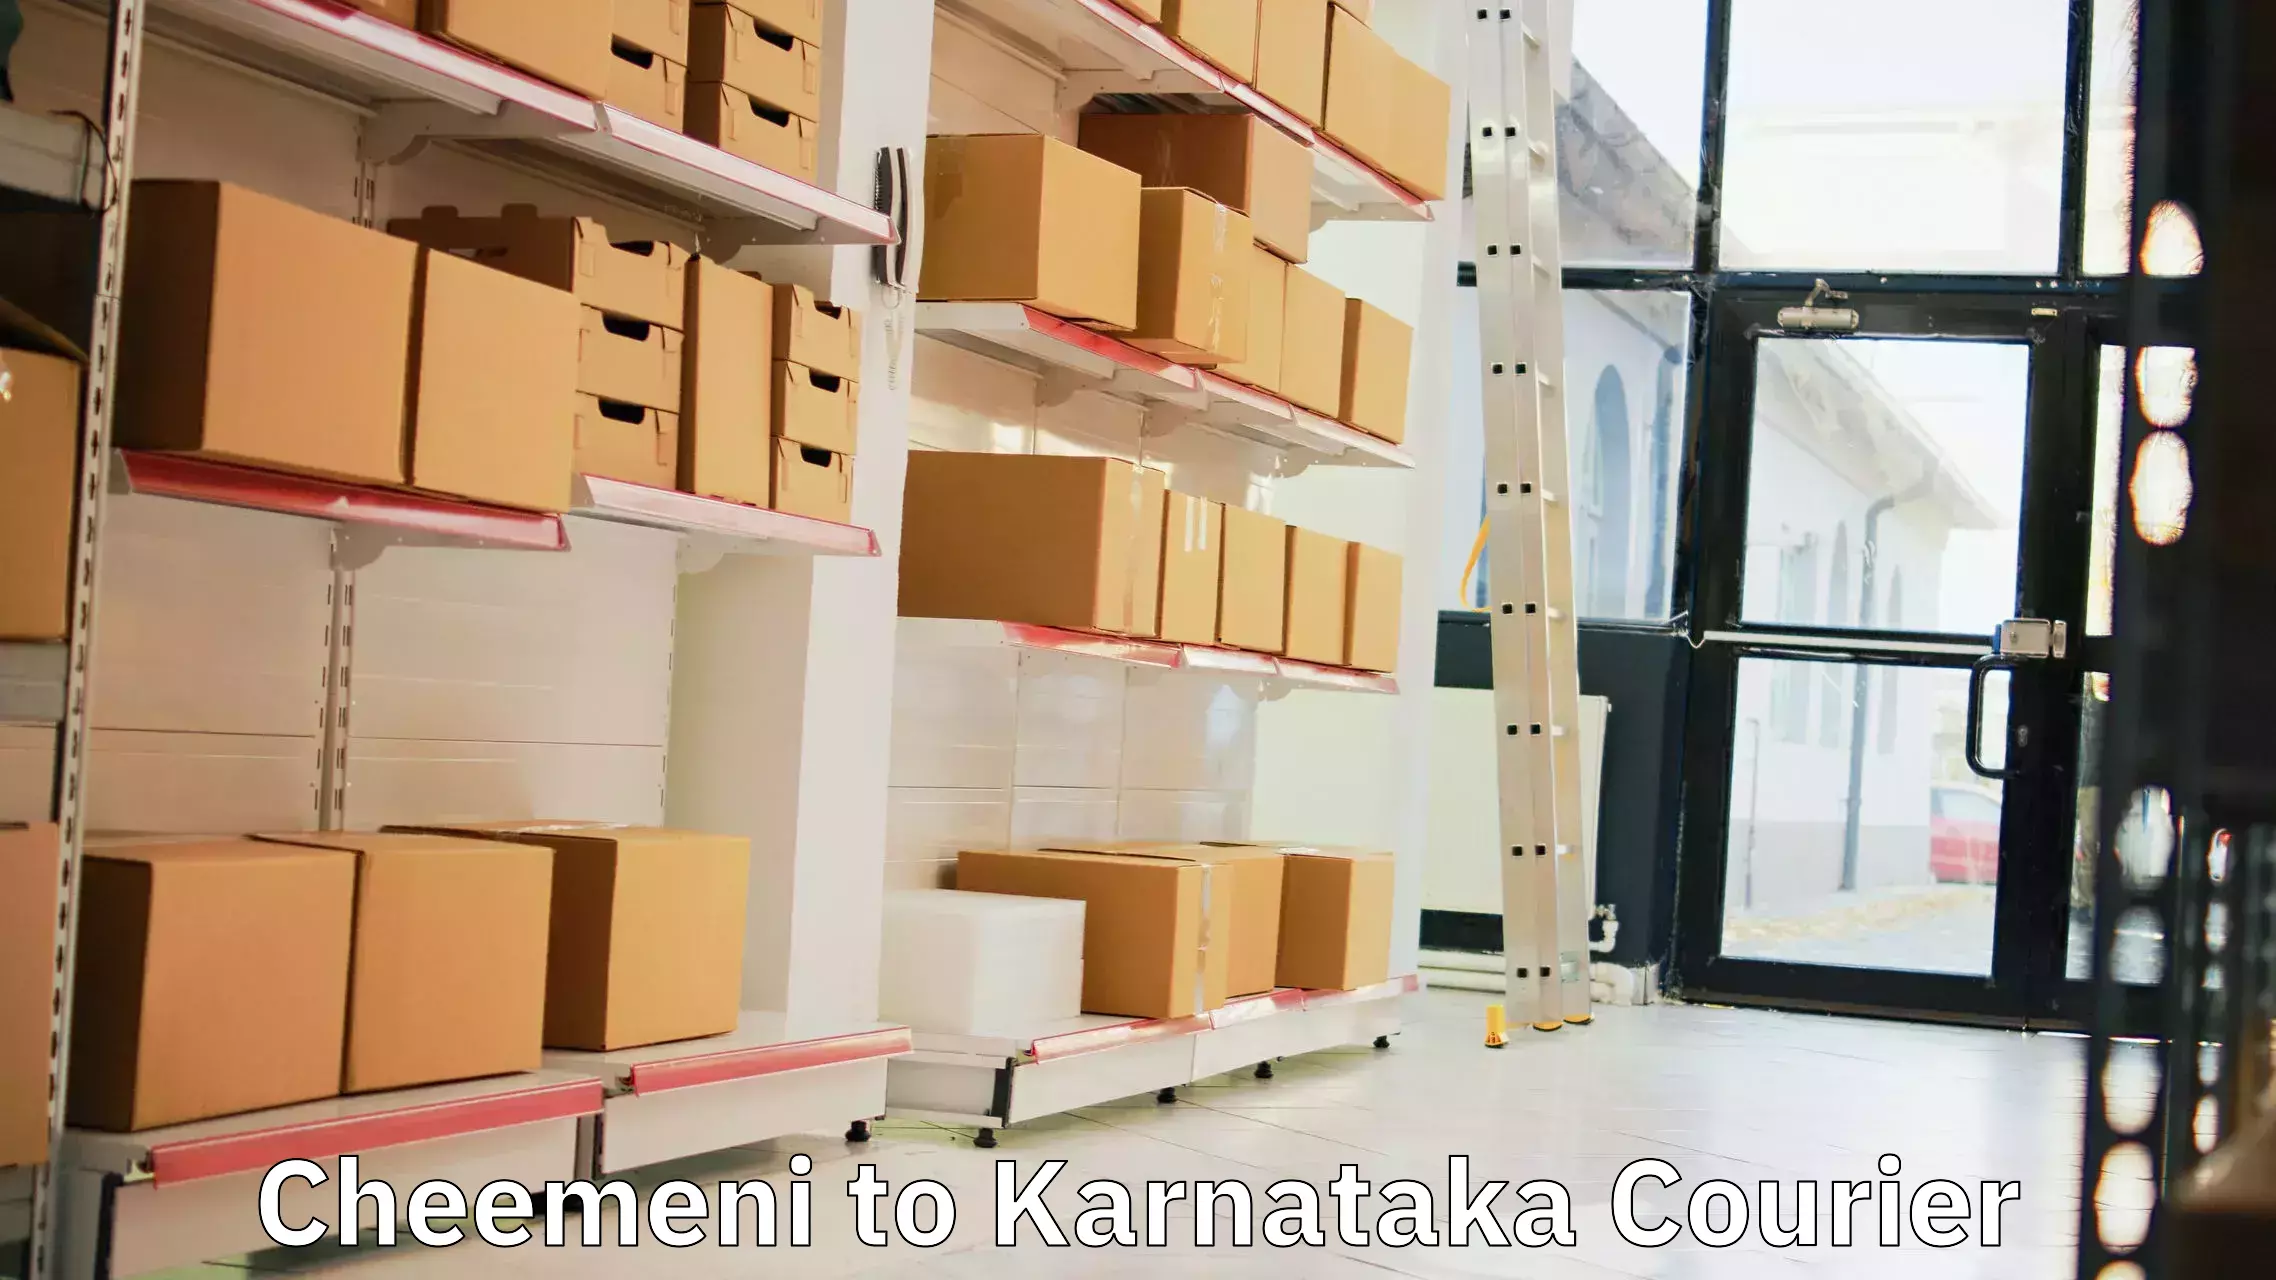 Shipping and handling Cheemeni to Karnataka